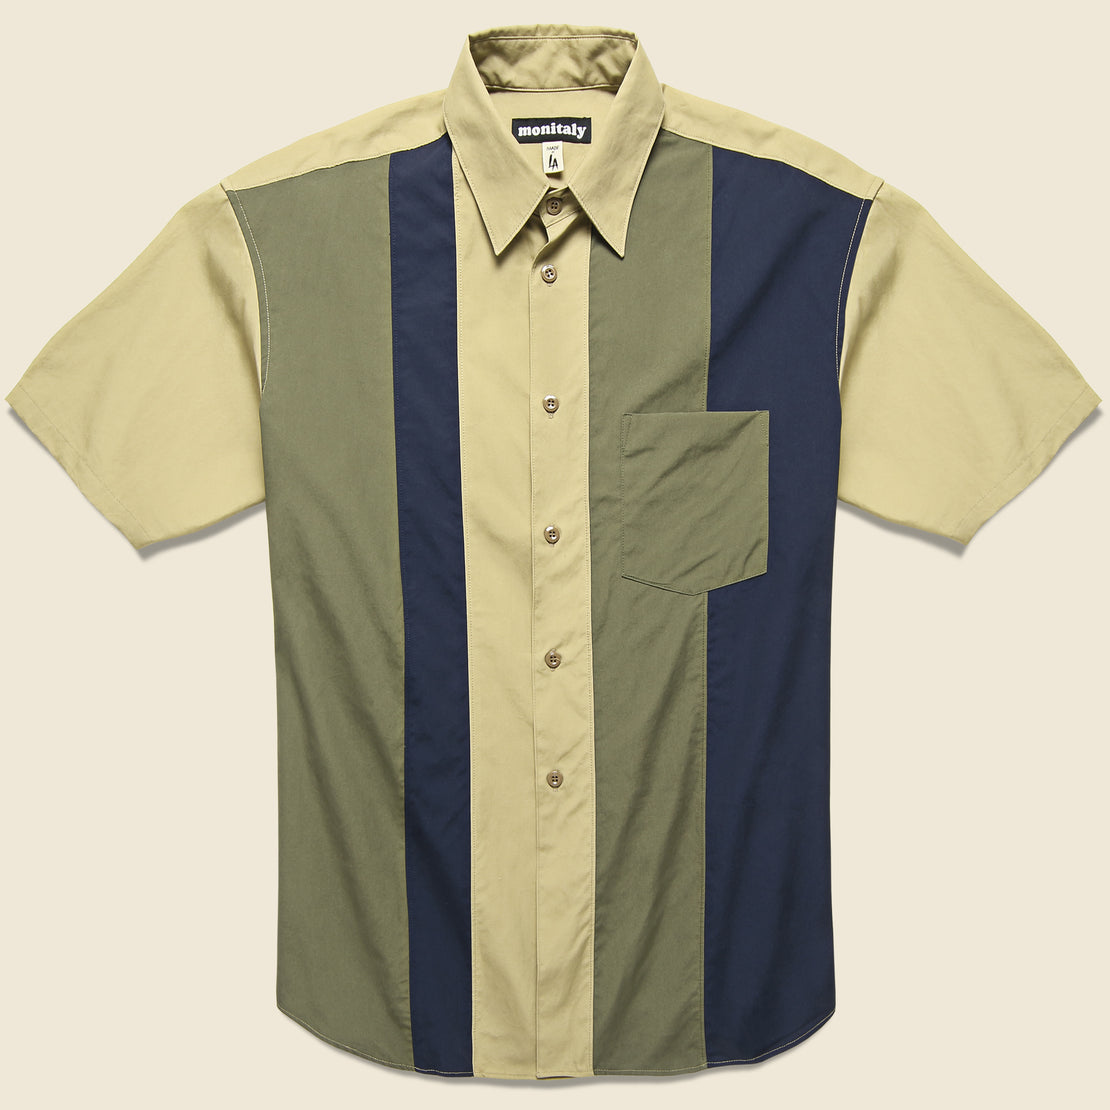 Monitaly Paneled Shirt - Khaki/Olive/Navy